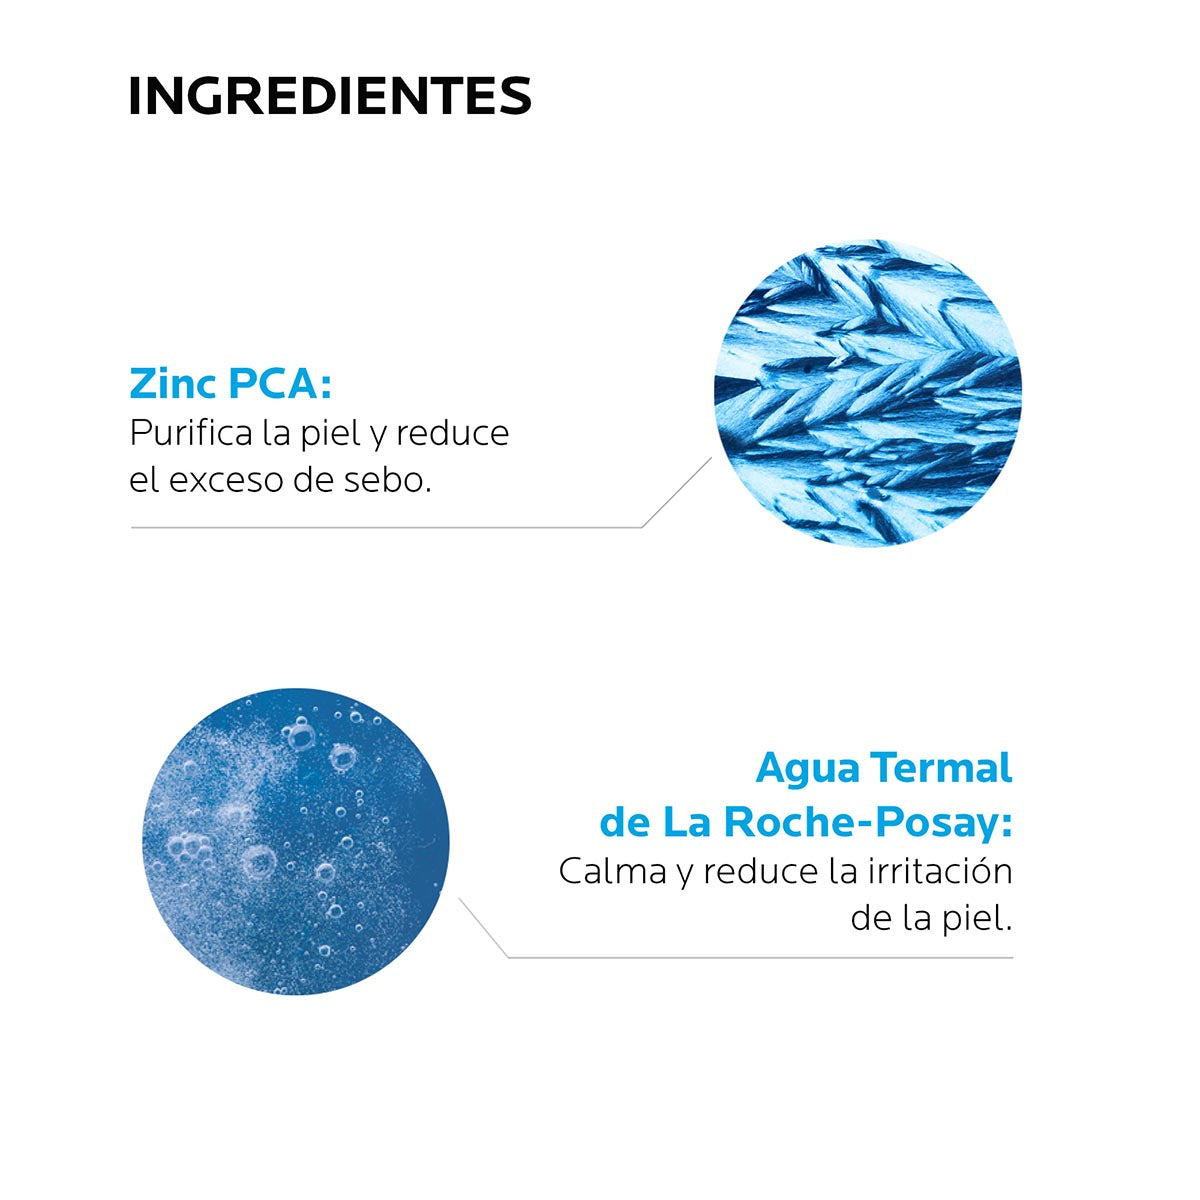 REVIEW La Roche Posay Effaclar gel limpiador purificante para pieles grasas  y sensibles